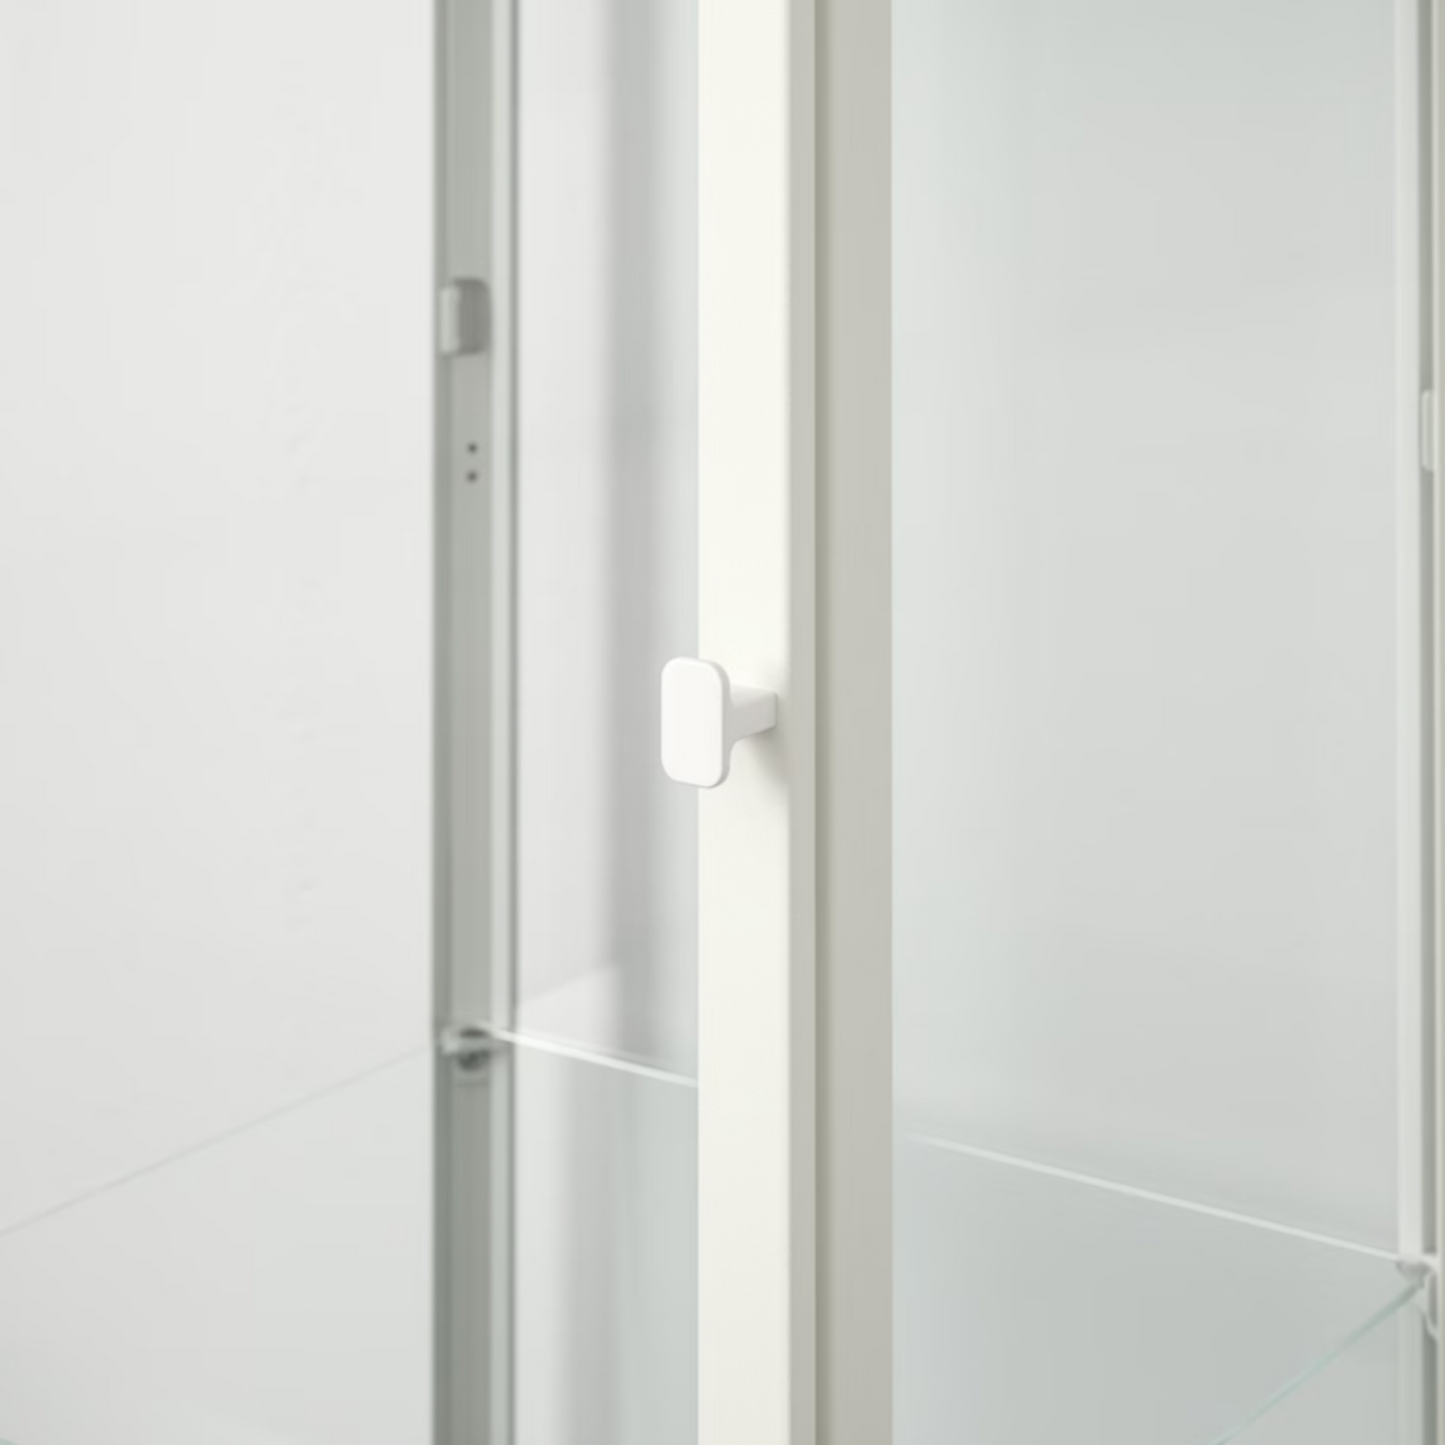 Ikea Blåliden Glass-Door Cabinet, White, 35x32x151cm (8884395868447)